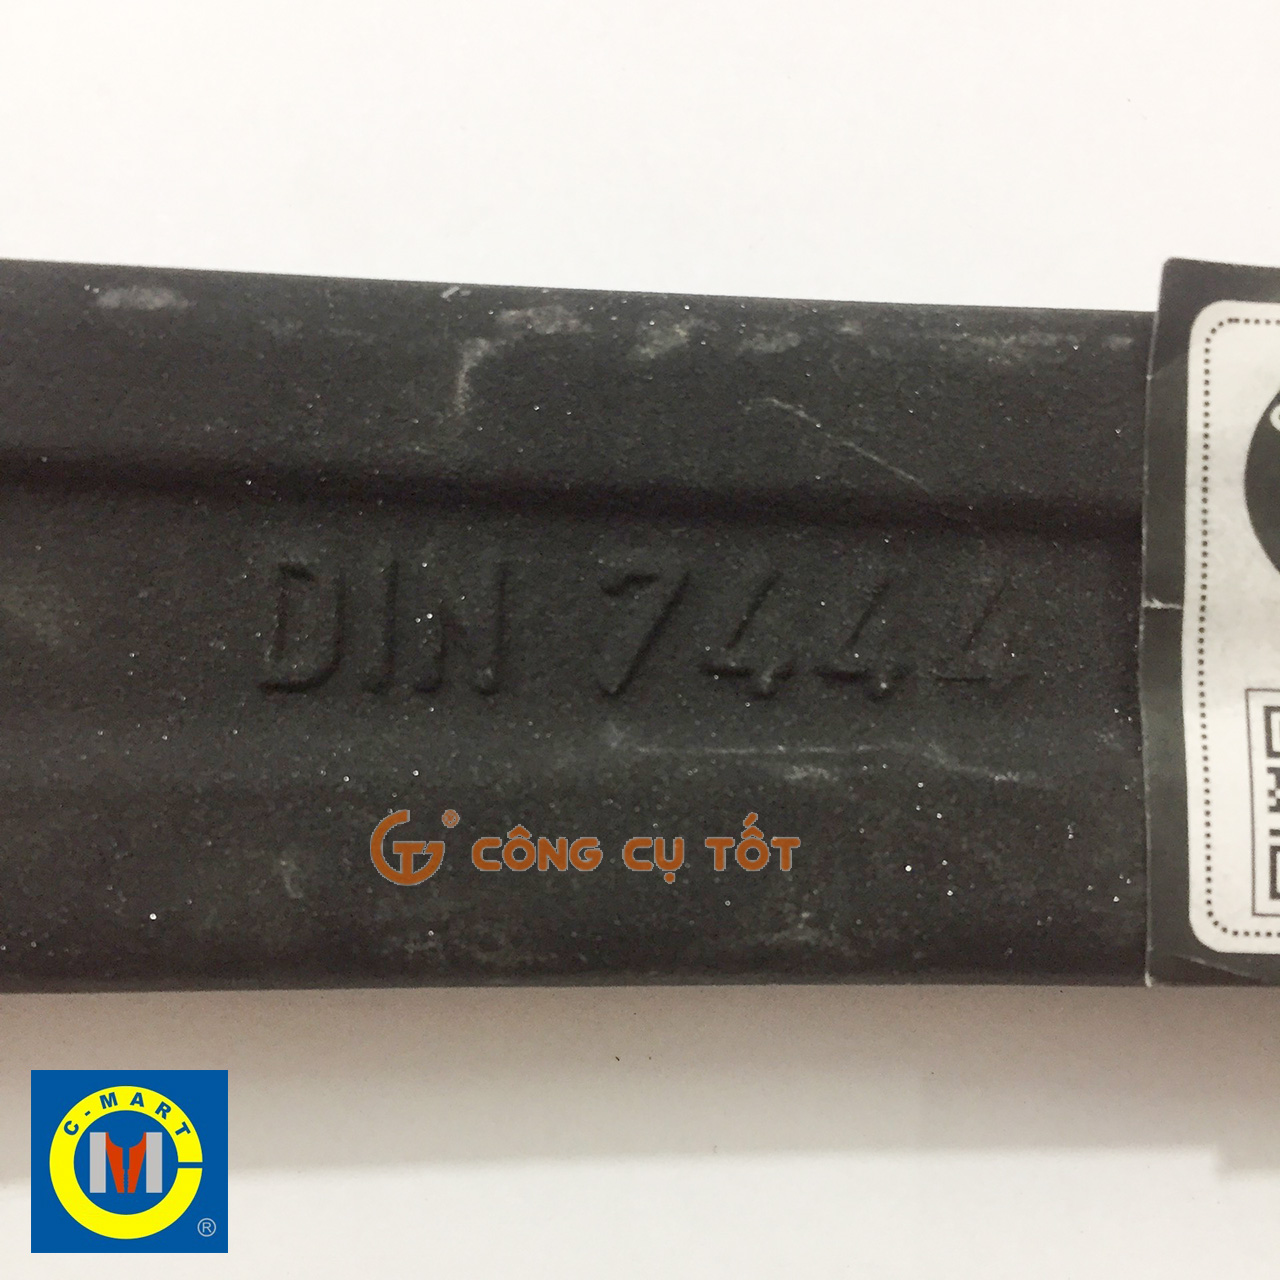 Sản phẩm chất lượng cao được sản xuất bởi quy trình công nghệ đạt chuẩn tiêu chí DIN 7444 